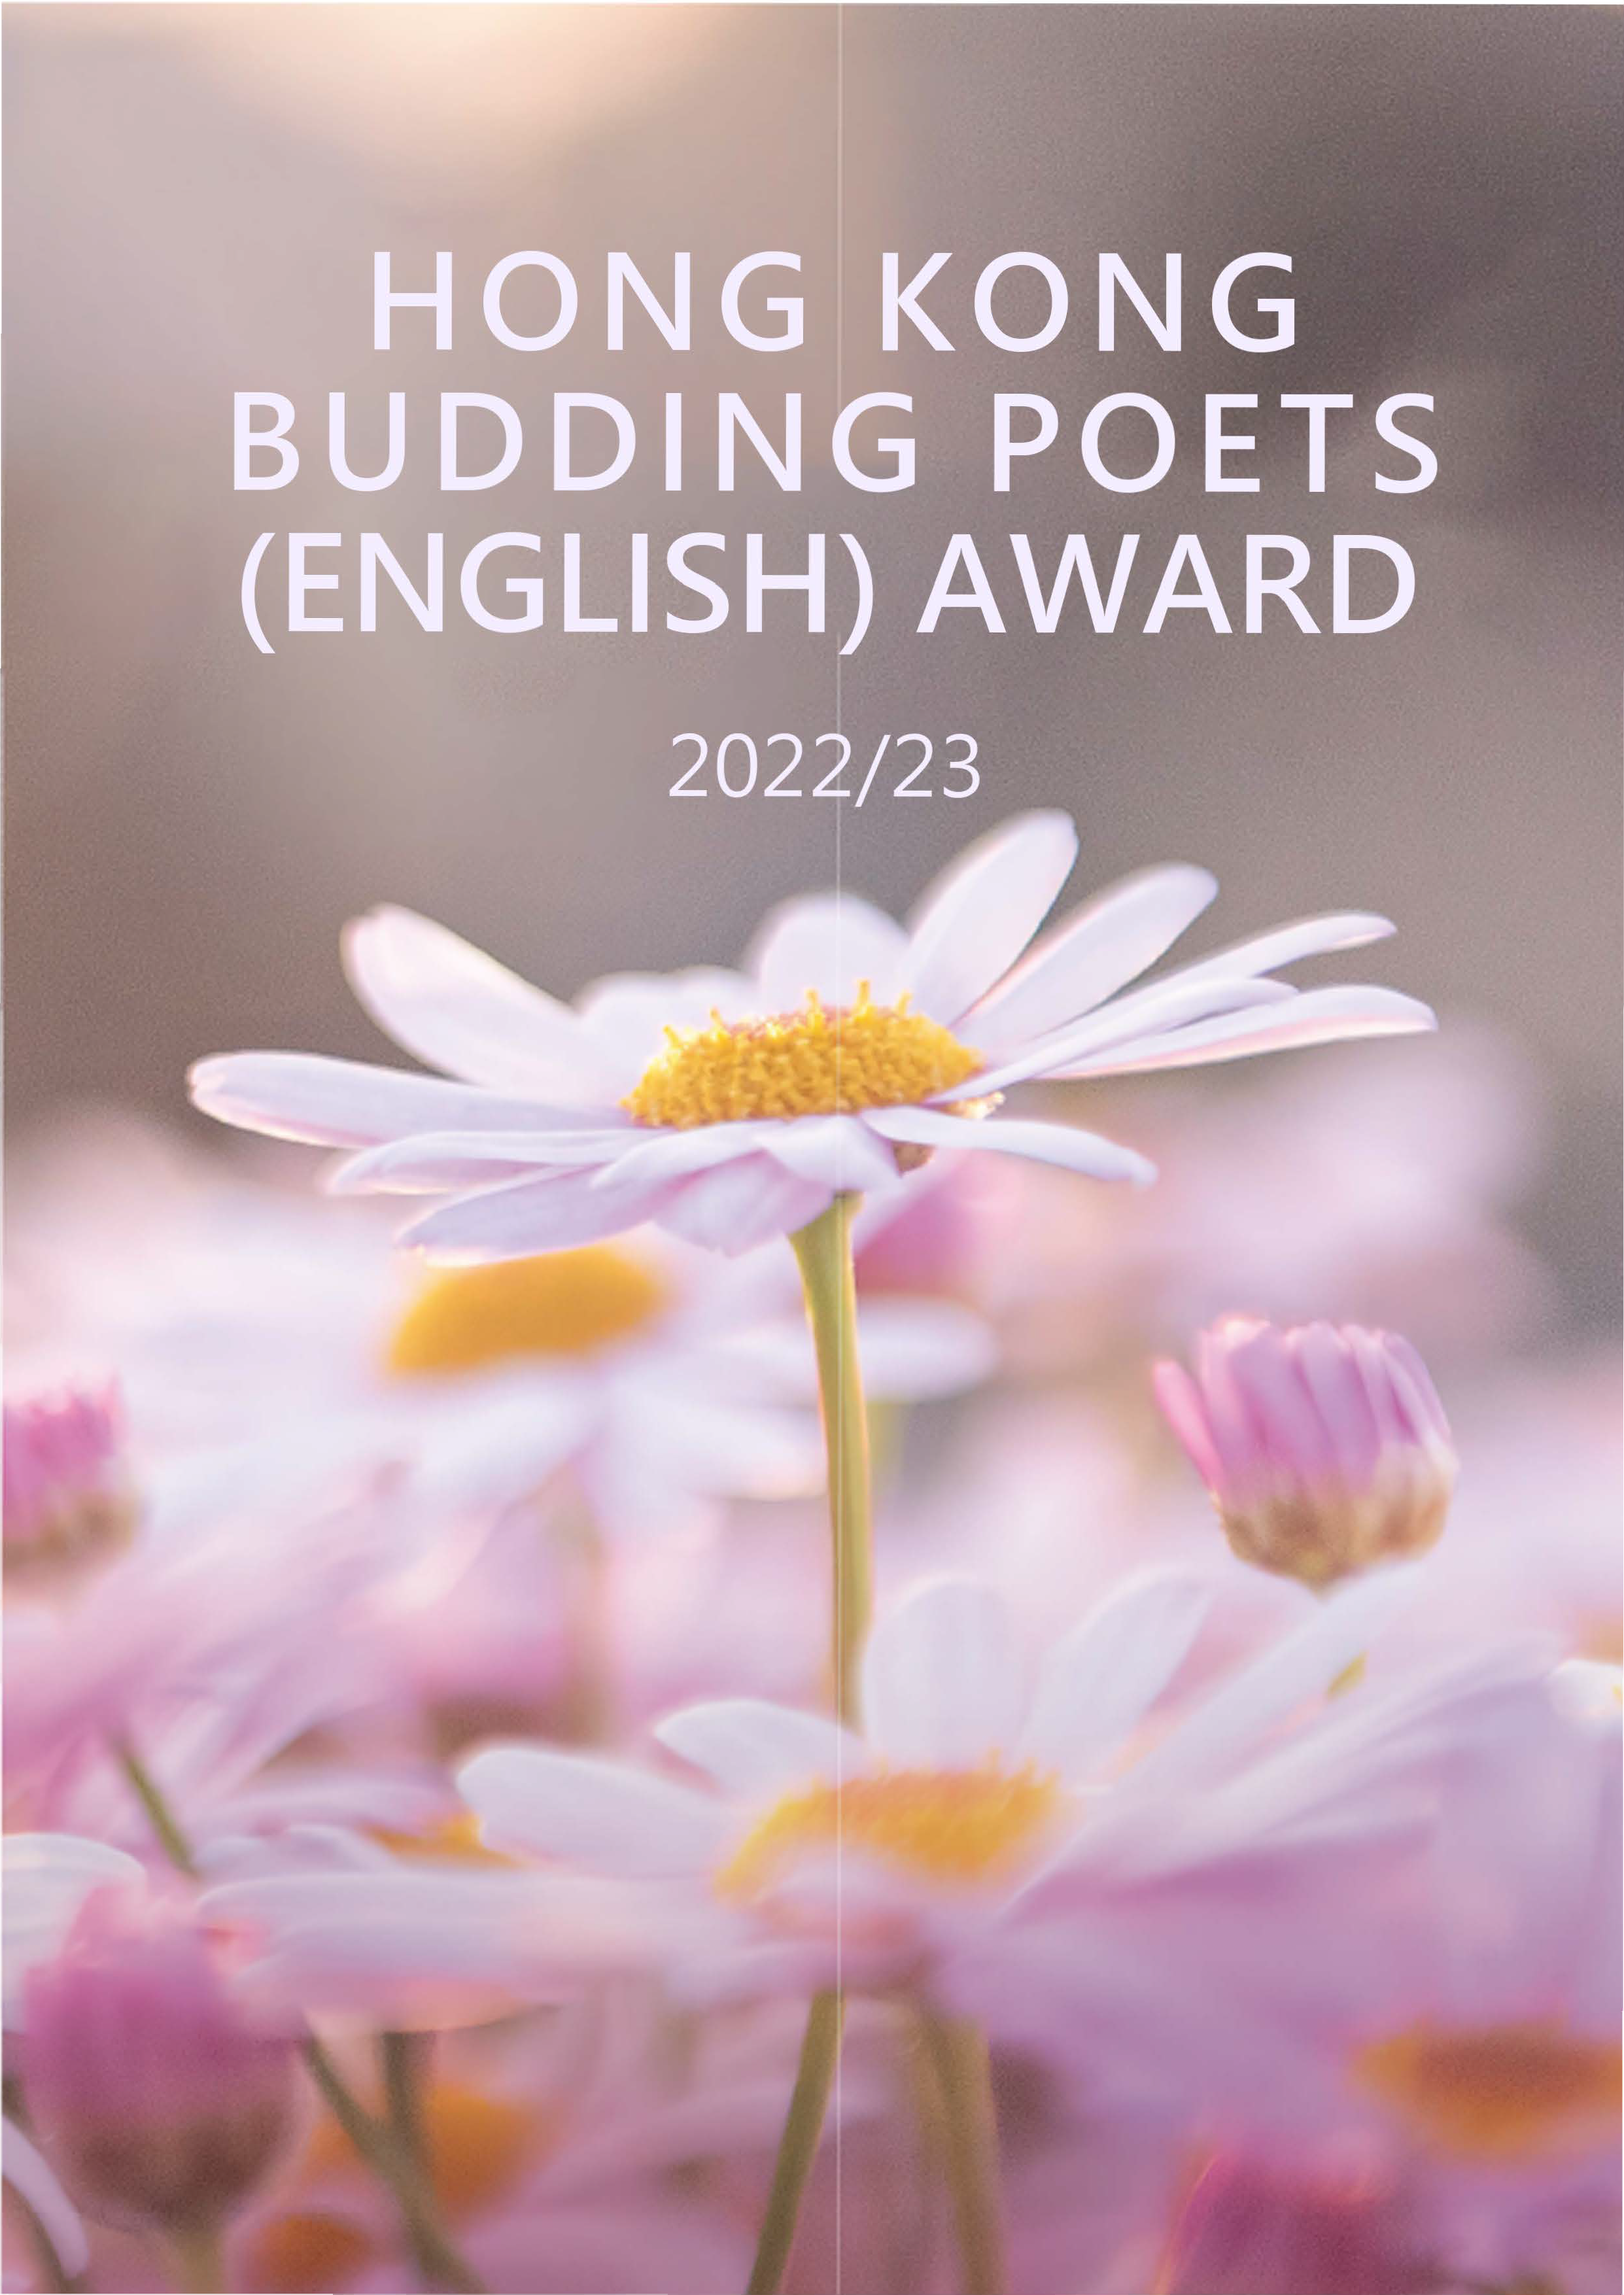 Hong Kong Budding Poets (English) Award - Anthology 2022/23